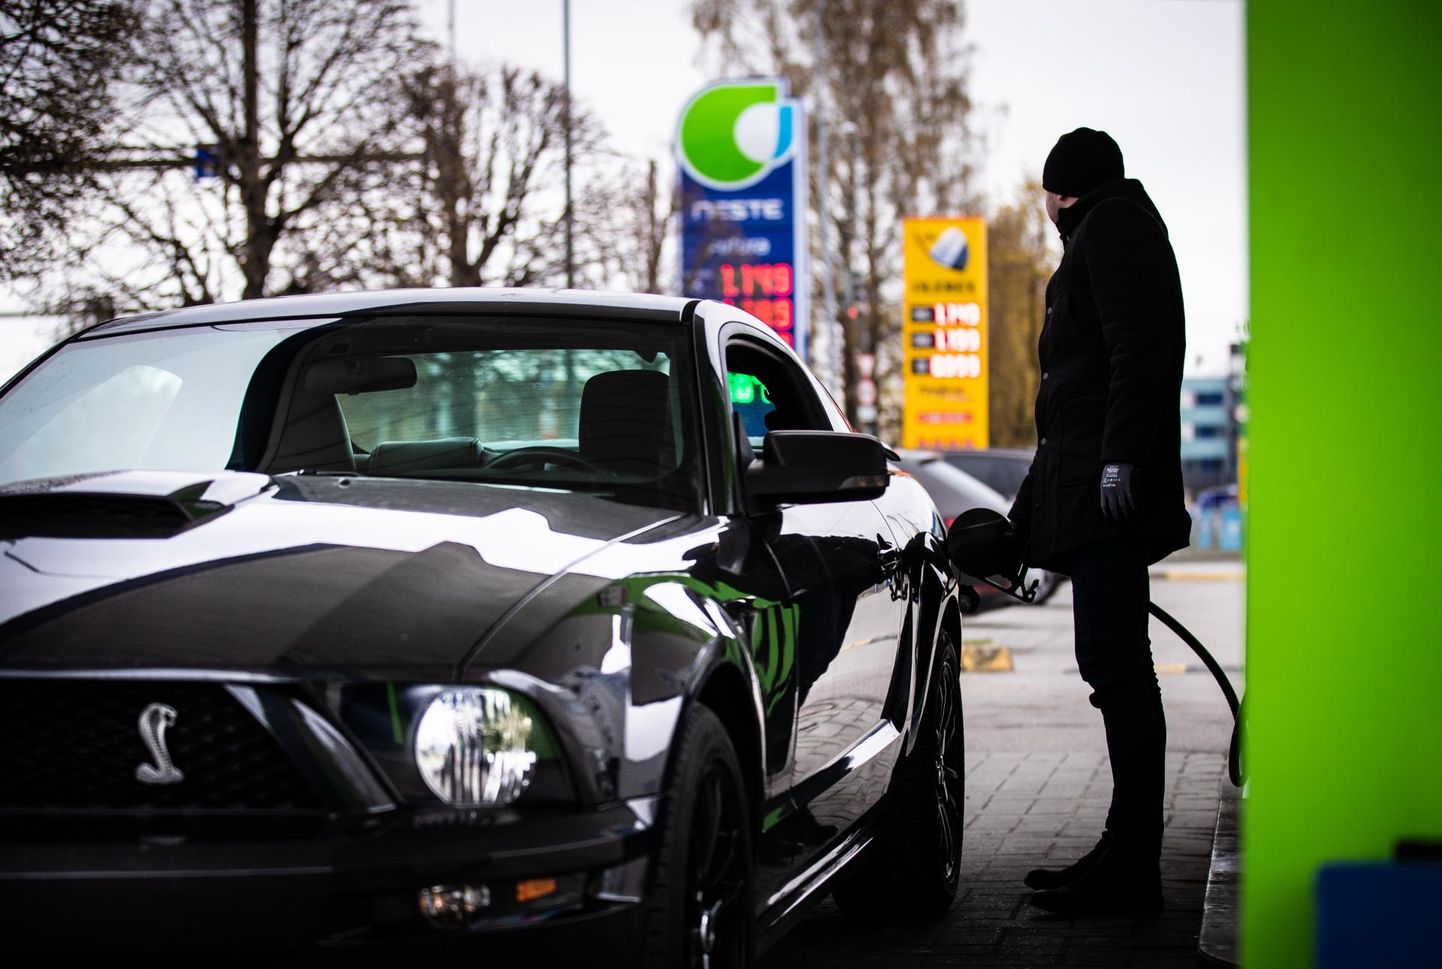 Tankla. Bensiini hinnad lendasid täna Eestis rekordkõrgele. Leevendust lubaks Iraani tuumalepe